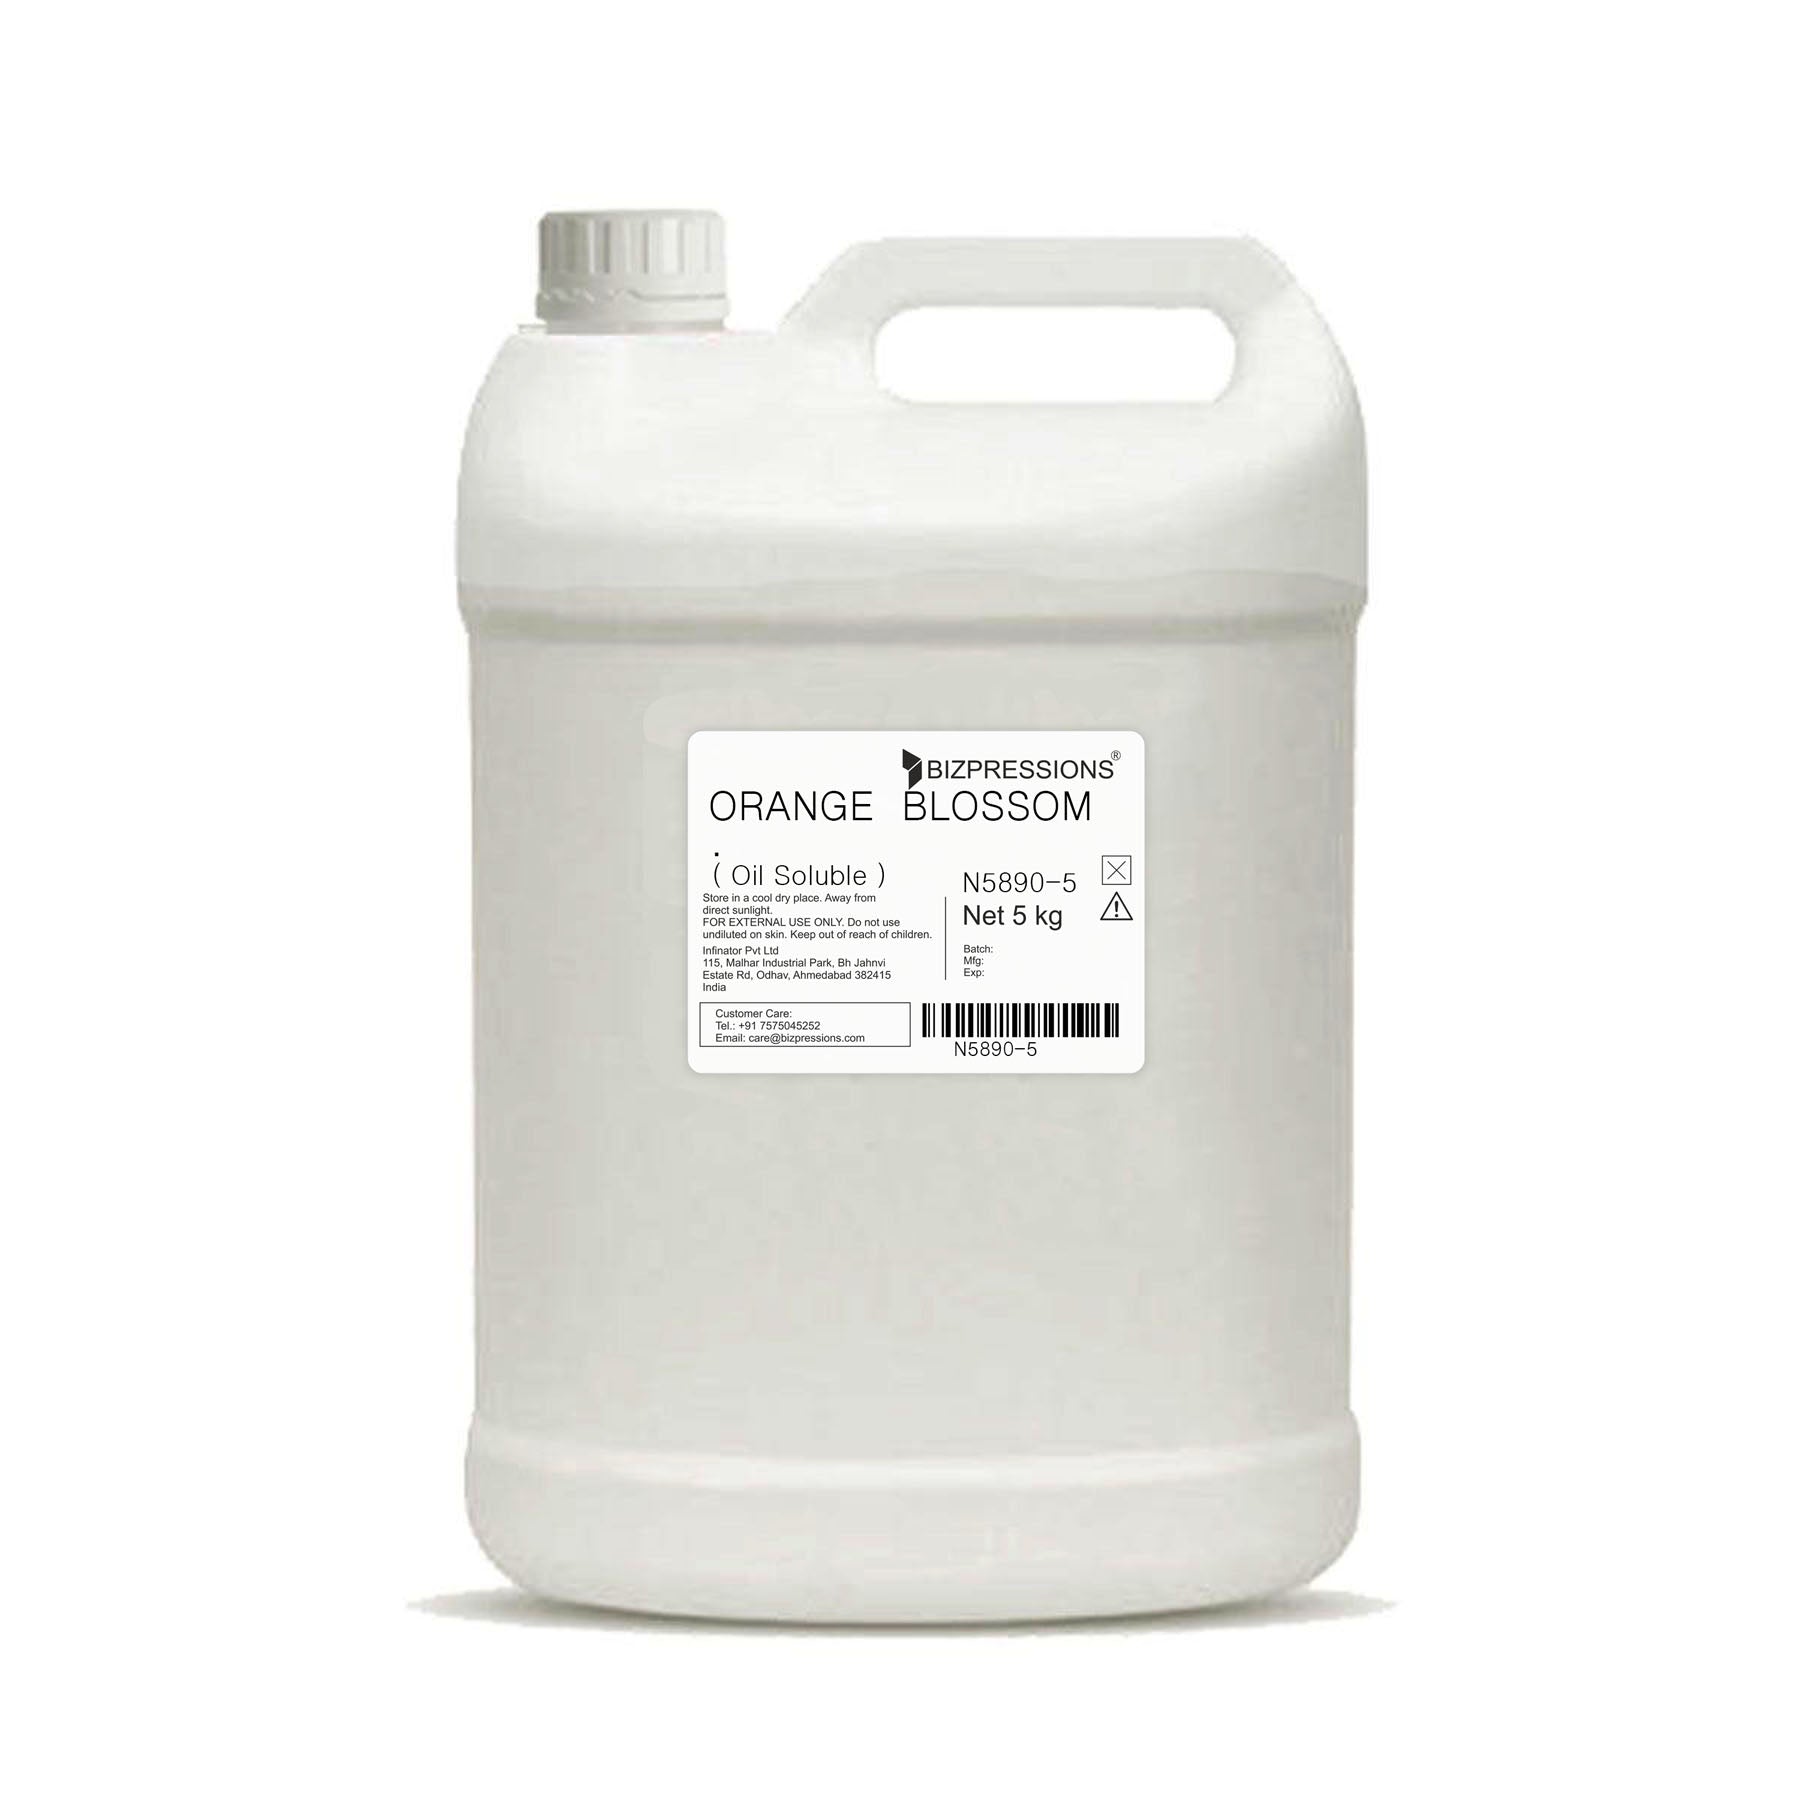 ORANGE BLOSSOM - Fragrance ( Oil Soluble ) - 5 kg